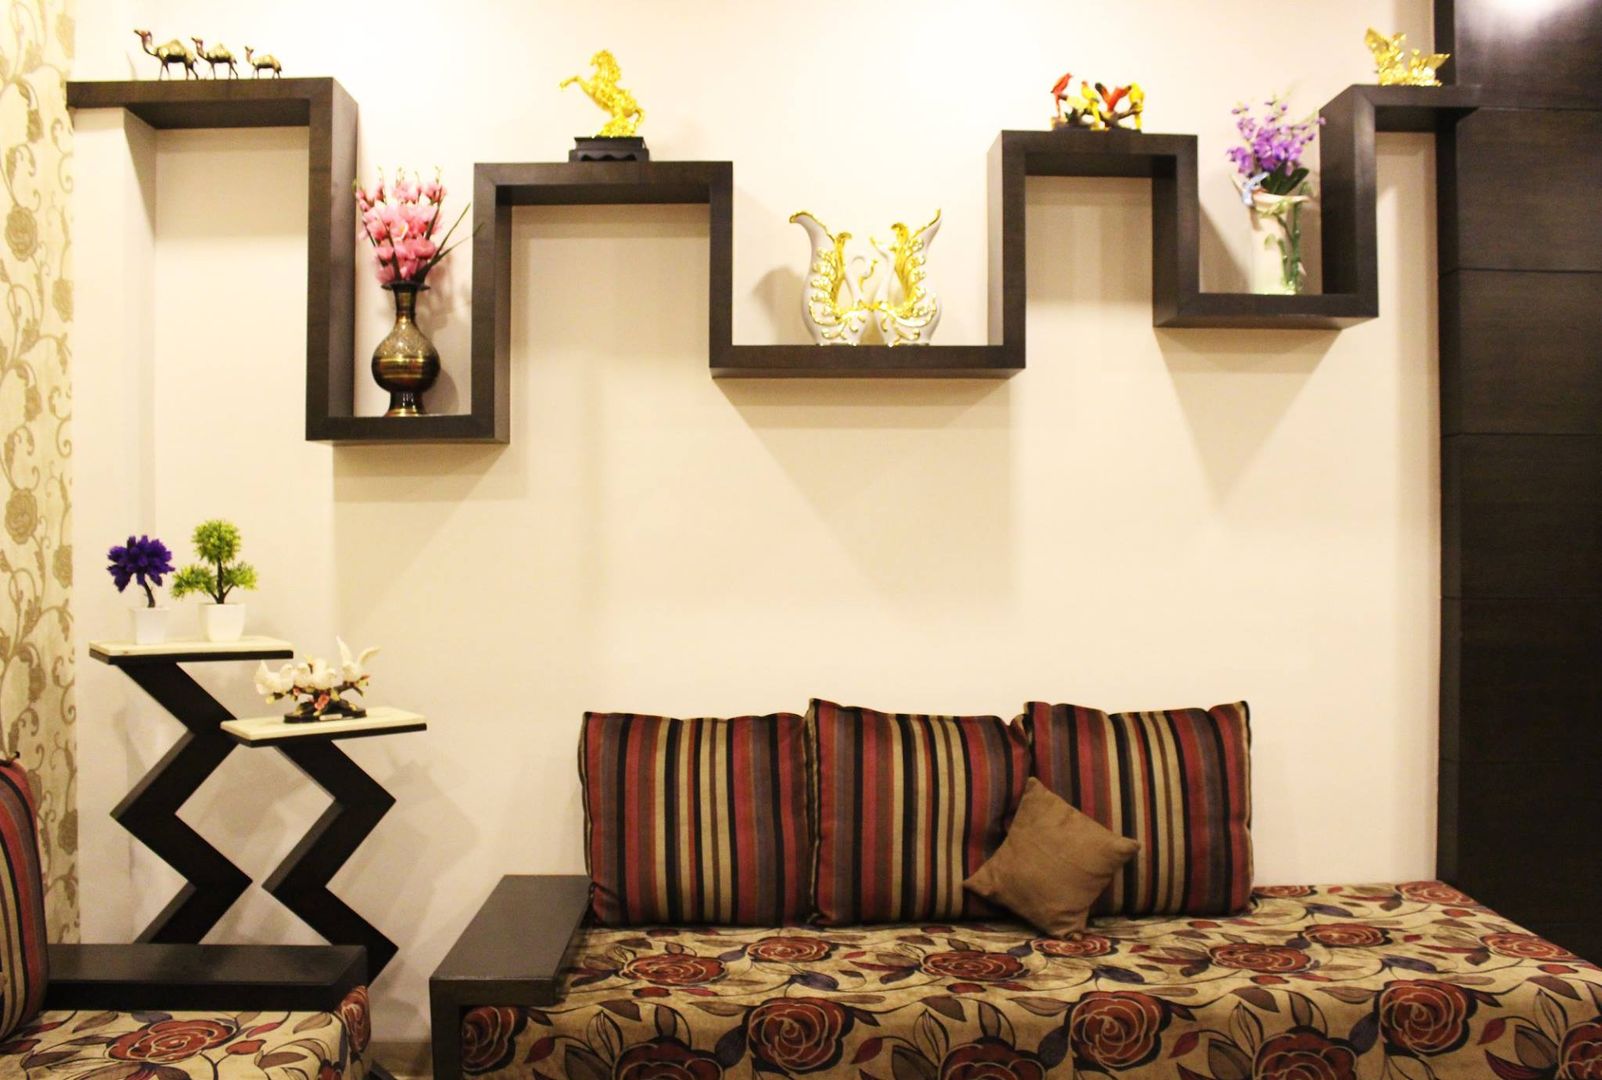 Duplex in Indore, Shadab Anwari & Associates. Shadab Anwari & Associates. Salones asiáticos